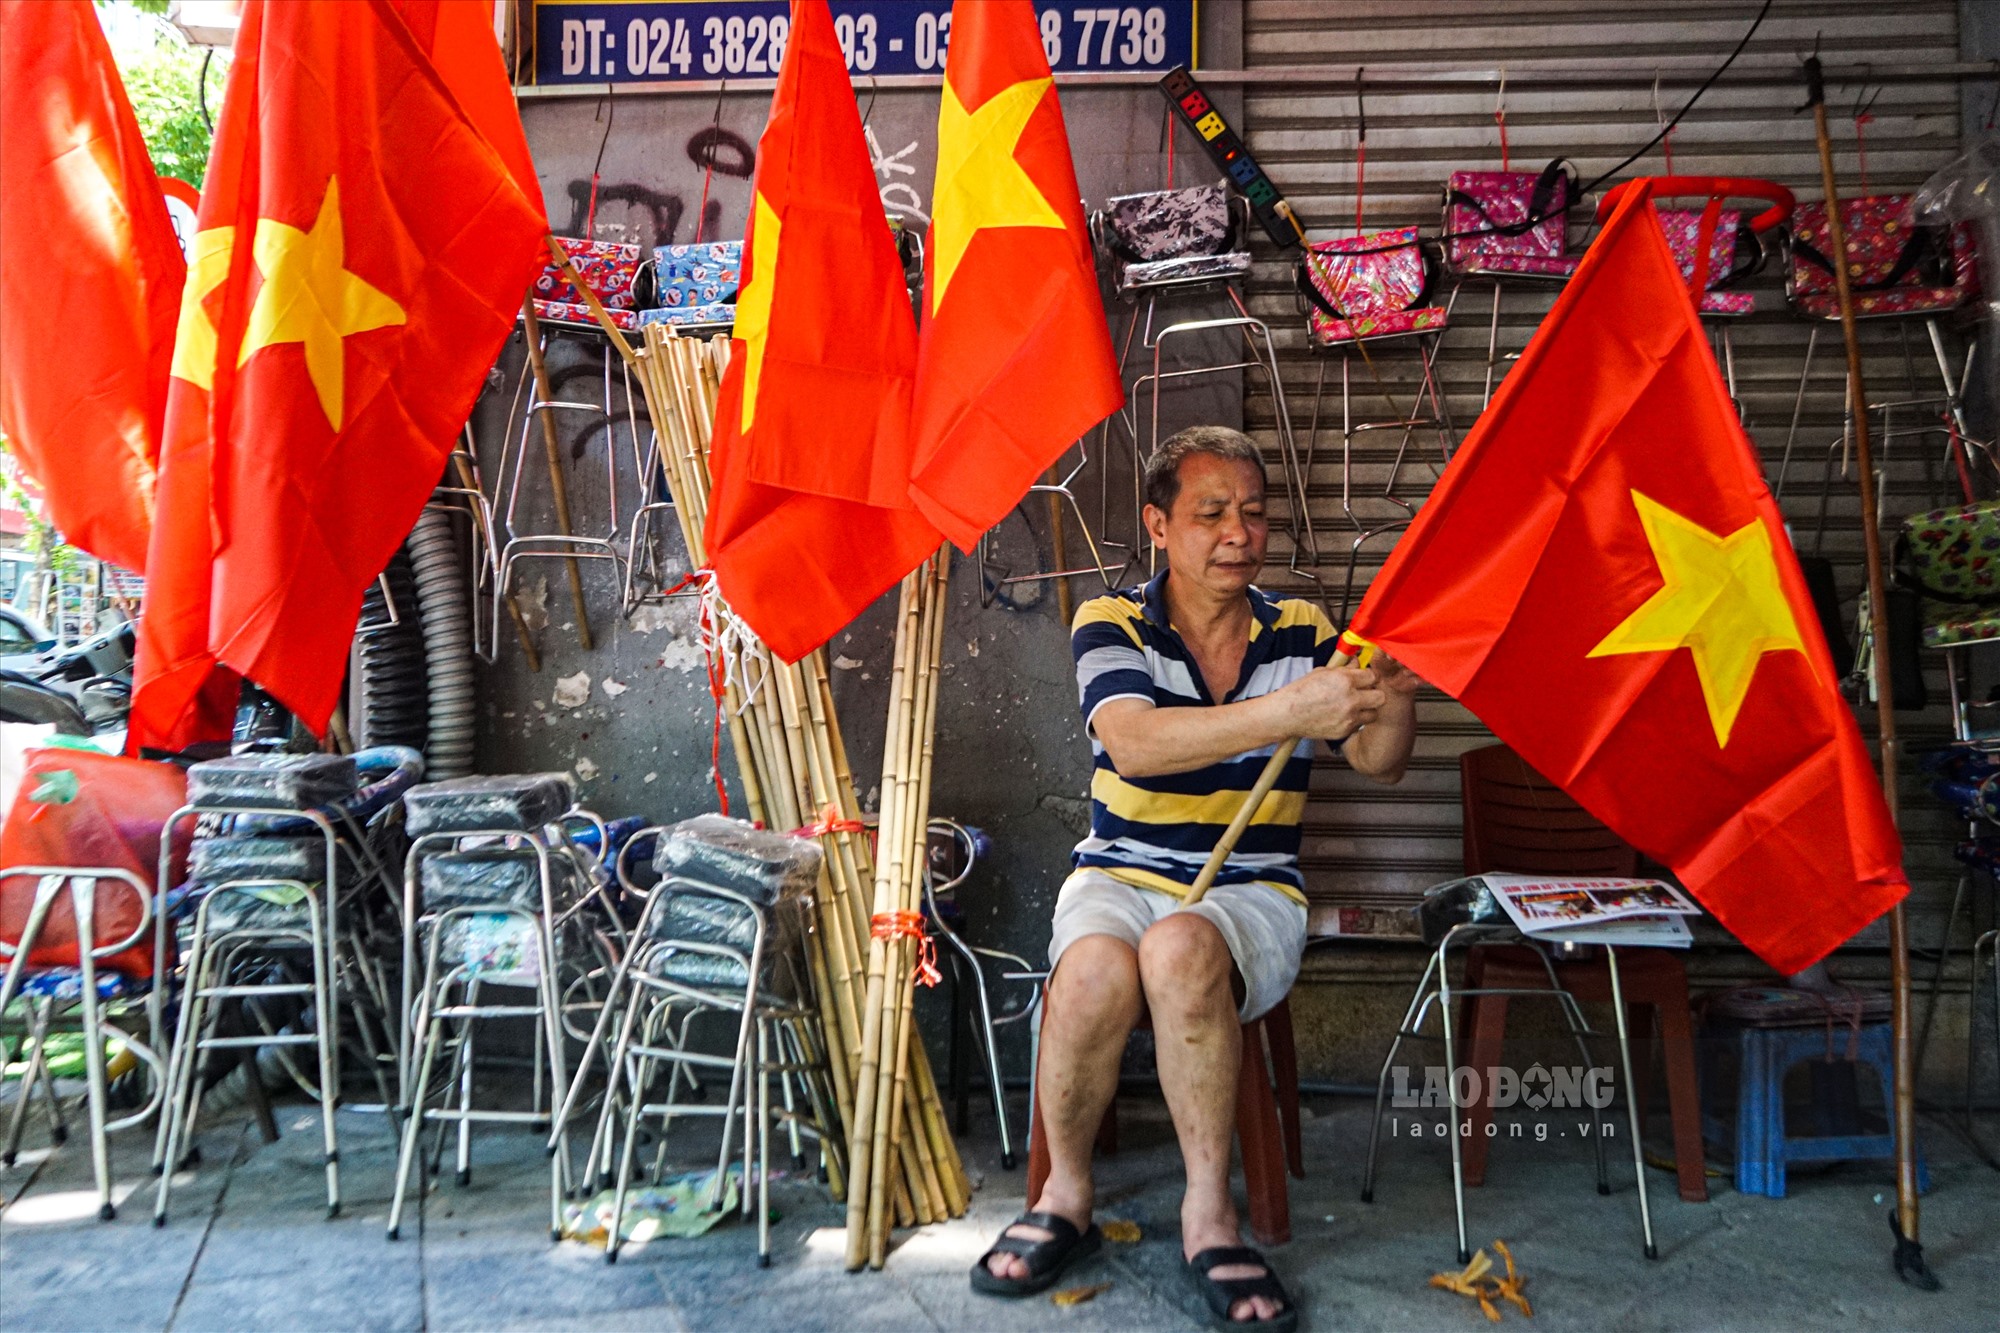 Những ngày này, việc kinh doanh, buôn bán cờ khá thuận lợi. Theo một số tiểu thương tại phố cổ Hà Nội. Mỗi lá cờ kèm cọc tre bám được giá từ 40 - 50 nghìn đồng. Giá có cao hơn so với ngày thương nhưng mặt hàng này vẫn rất đắt khách.